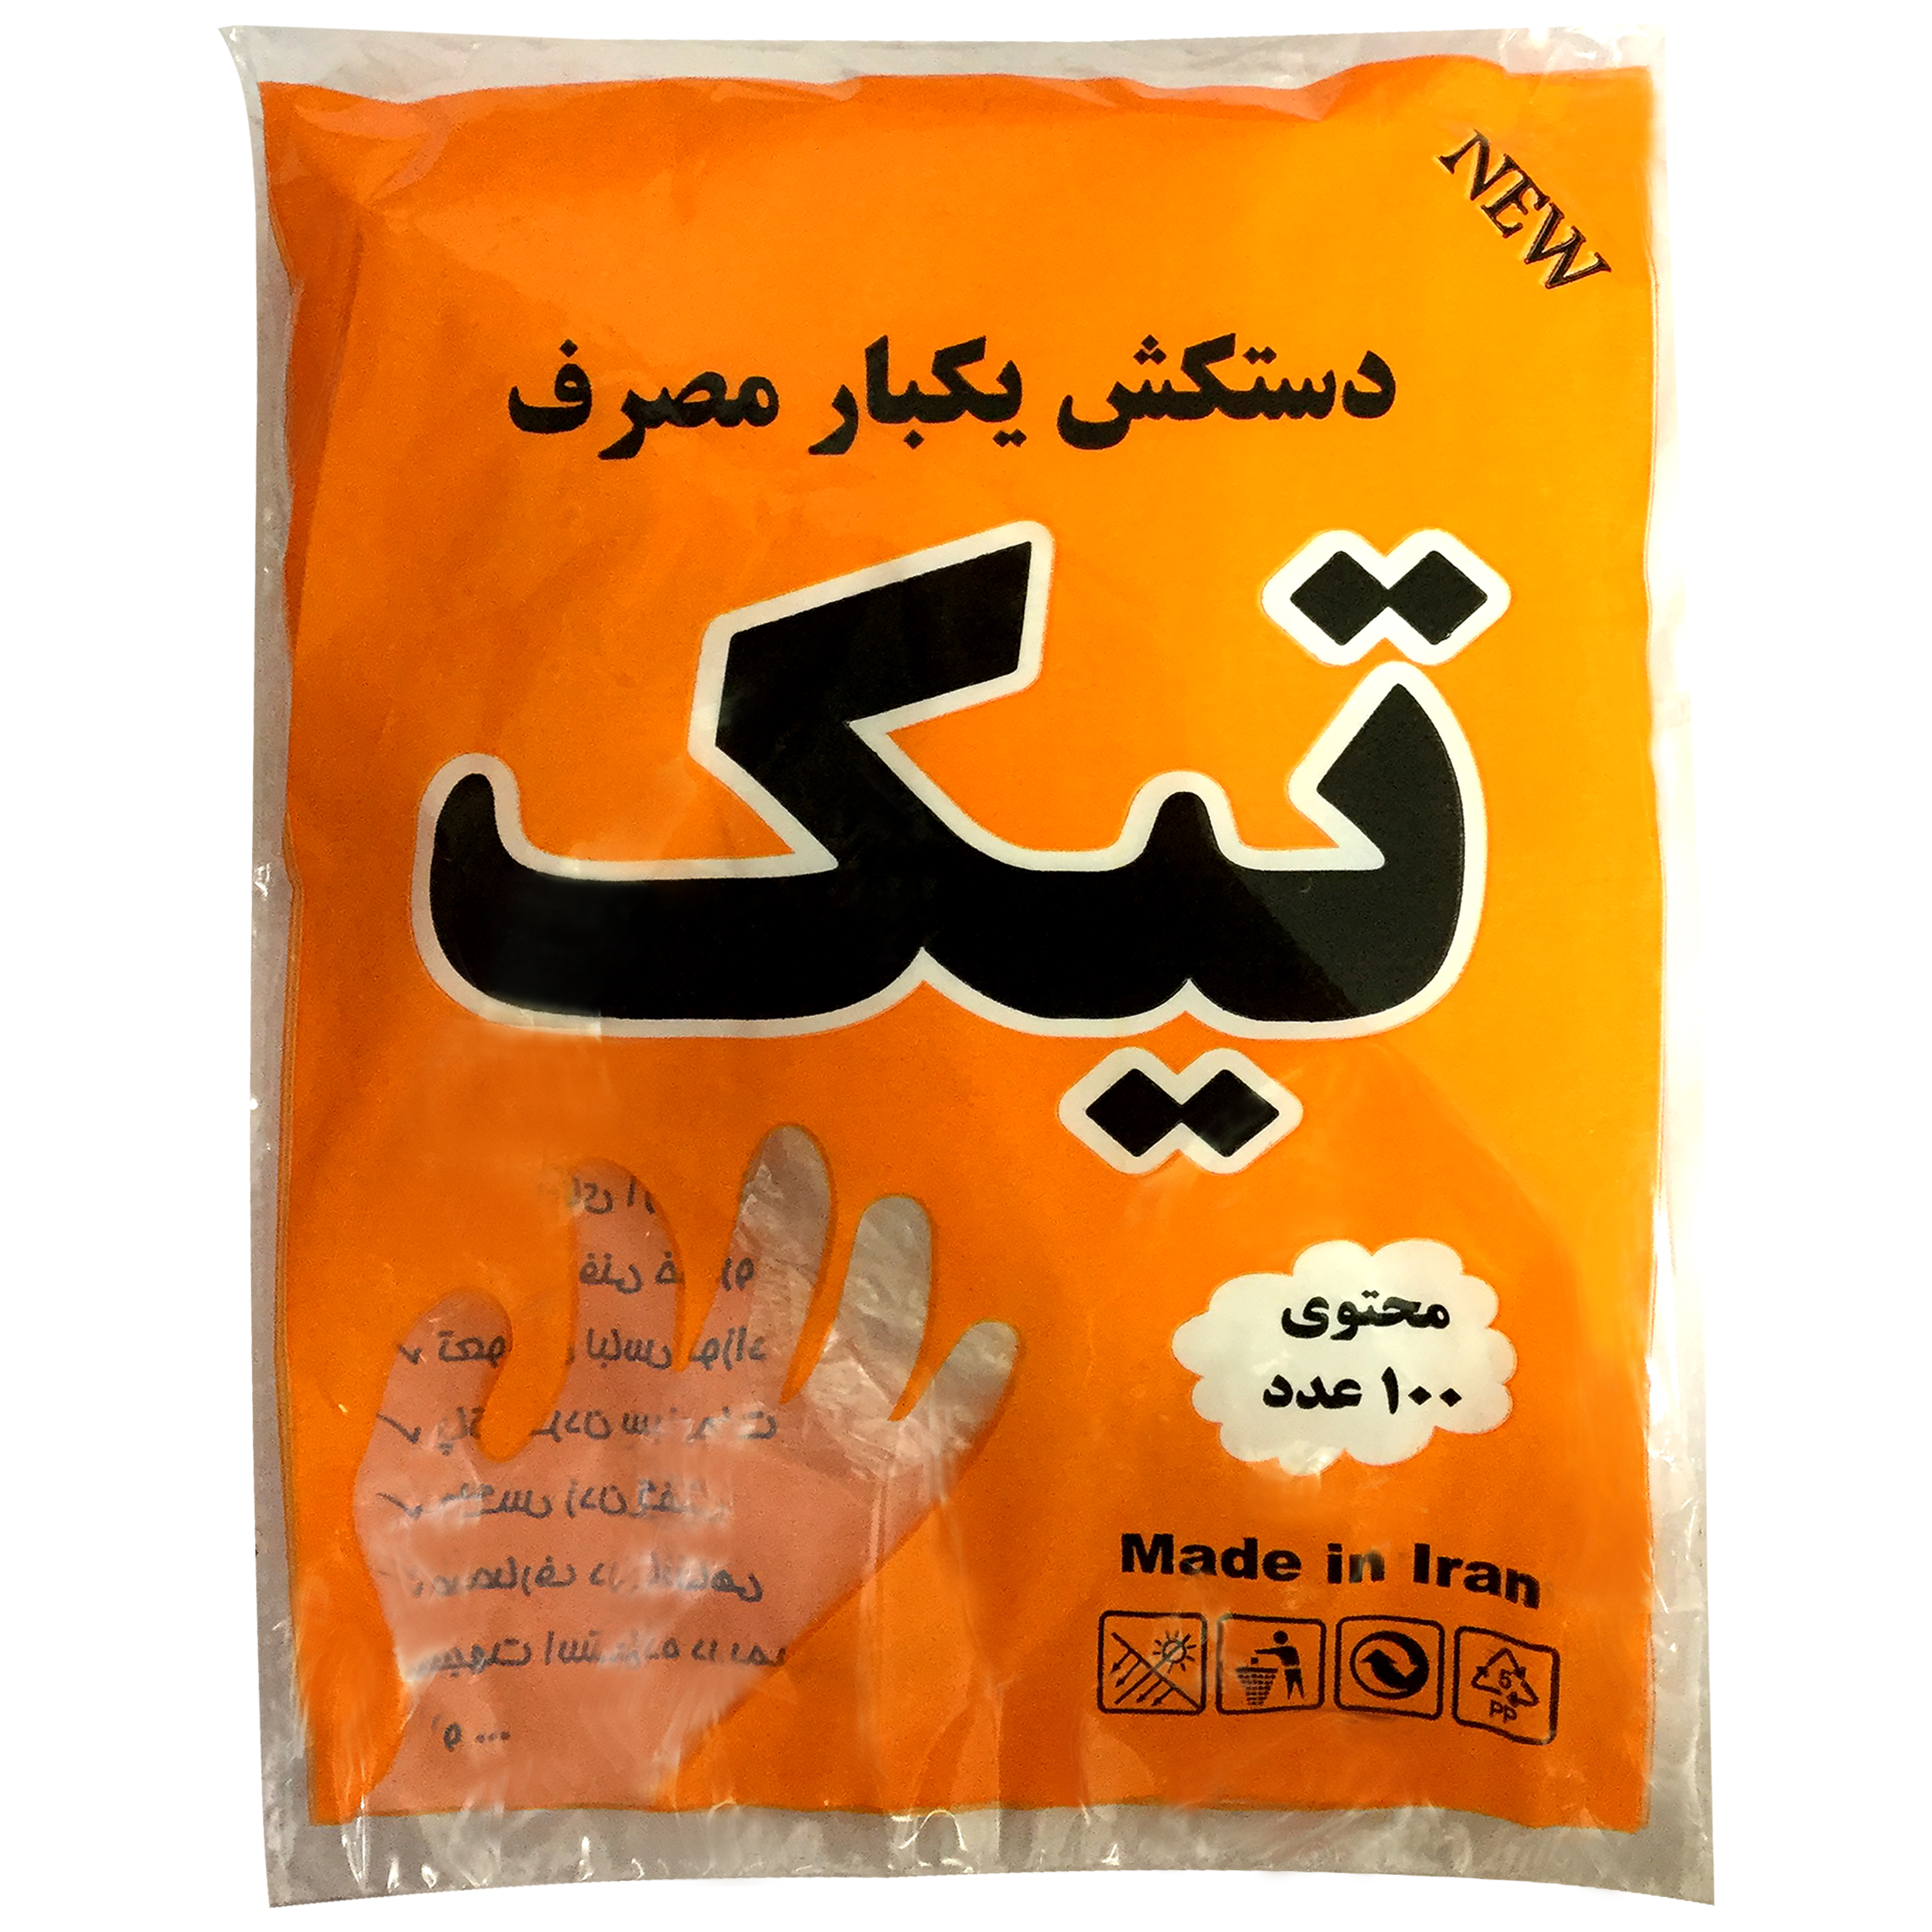 آنباکس دستکش یکبار مصرف تیک مدل H5 بسته 100 عددی توسط رمضان قیصری در تاریخ ۲۷ خرداد ۱۳۹۹